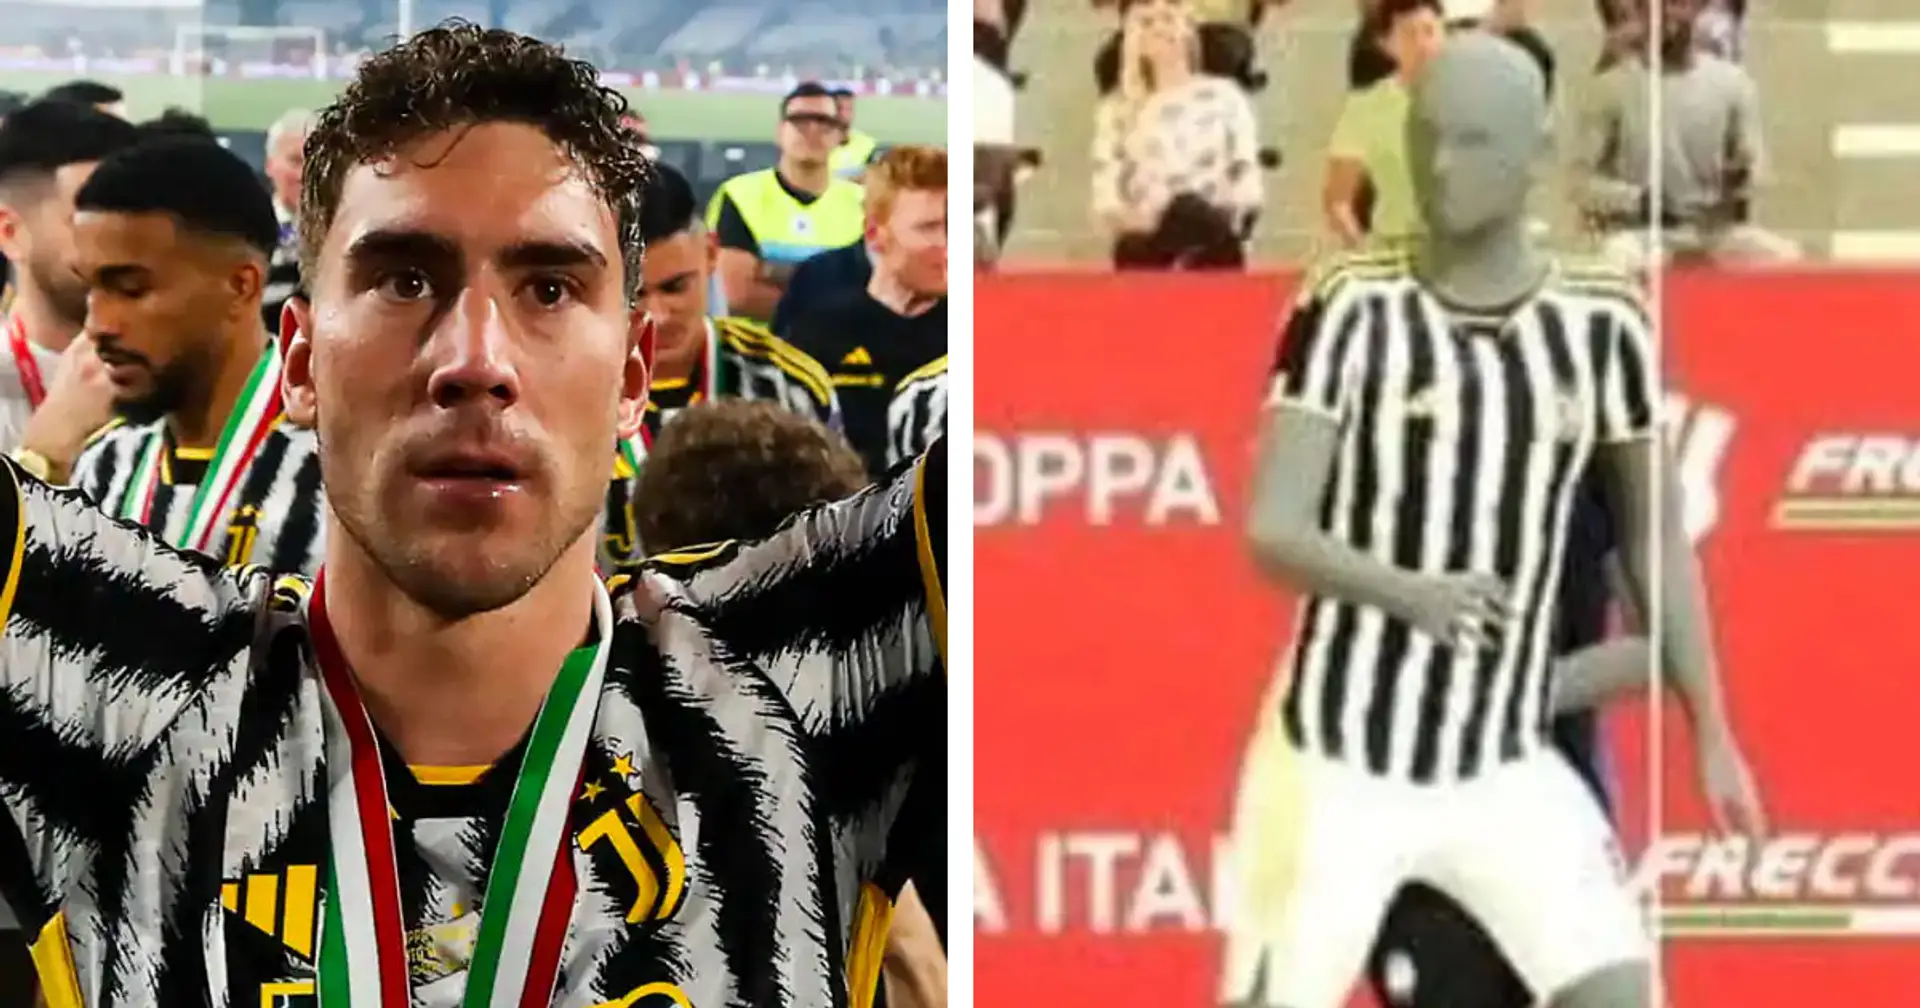 Vlahovic e la gloria mancata per un fuorigioco millimetrico: l'immagine è virale dopo Atalanta-Juventus